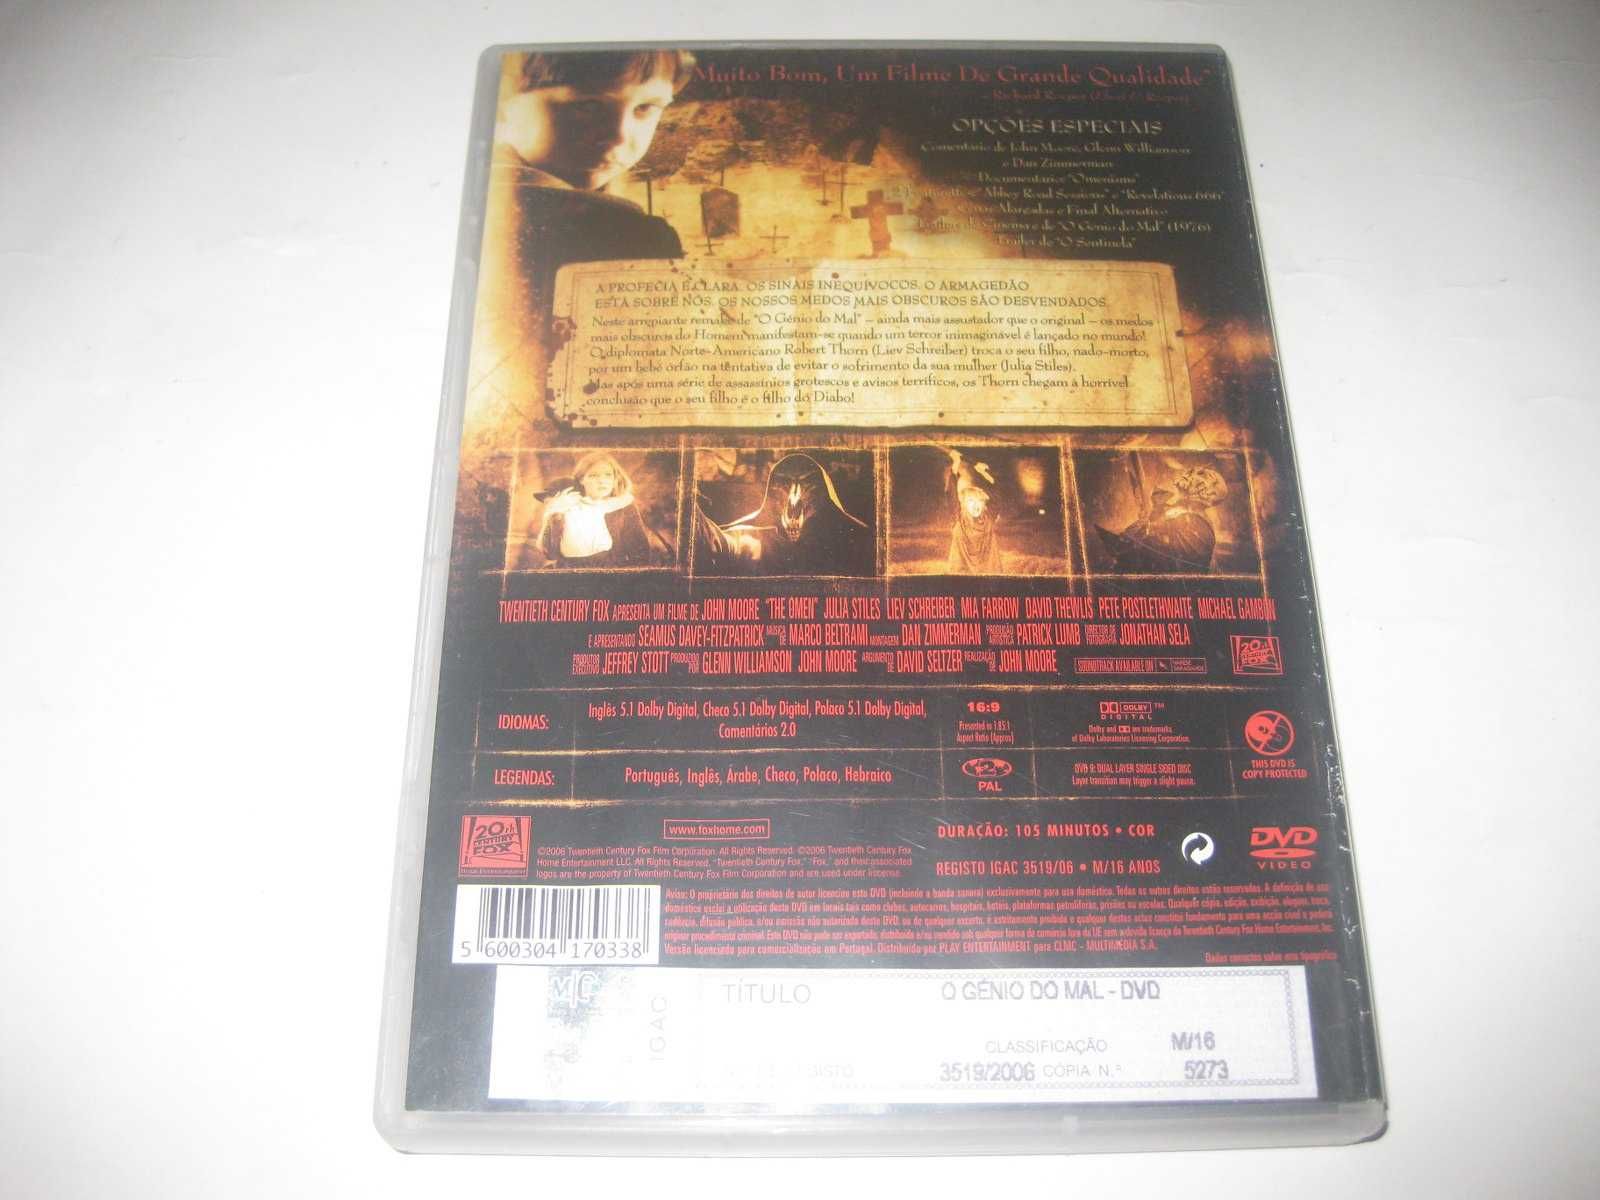 DVD "O Génio do Mal" de John Moore